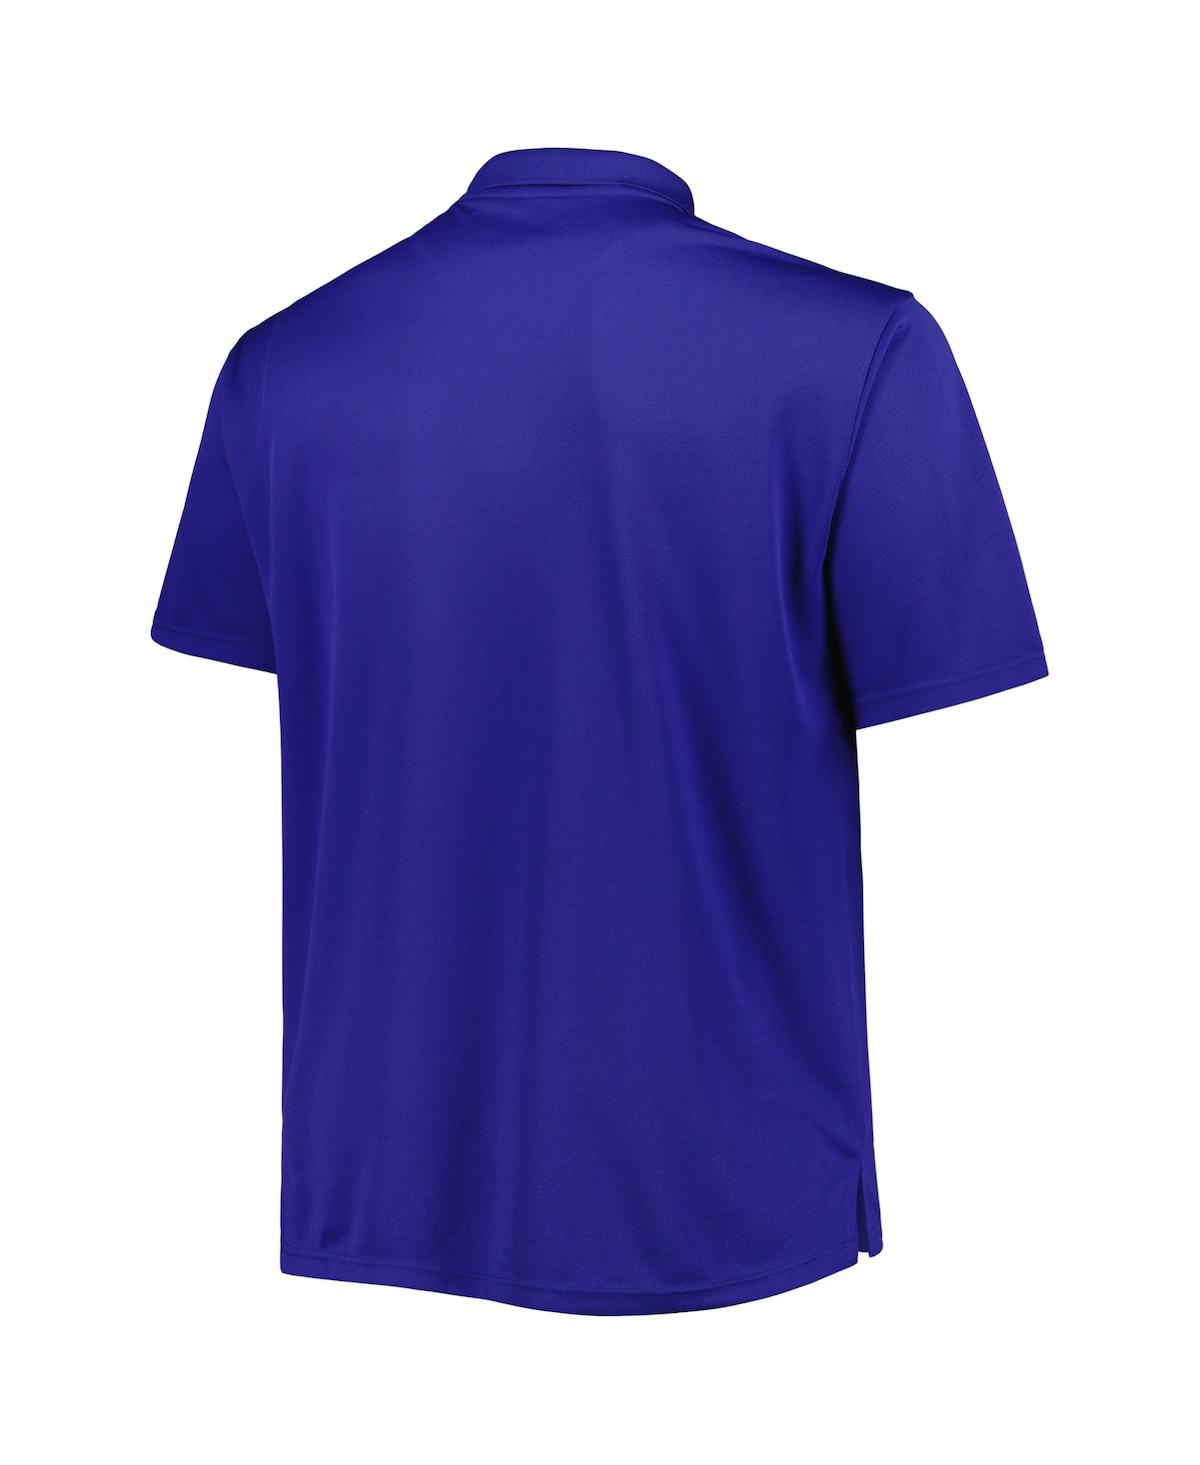 Shop Fanatics Men's Royal Indianapolis Colts Big And Tall Birdseye Polo Shirt